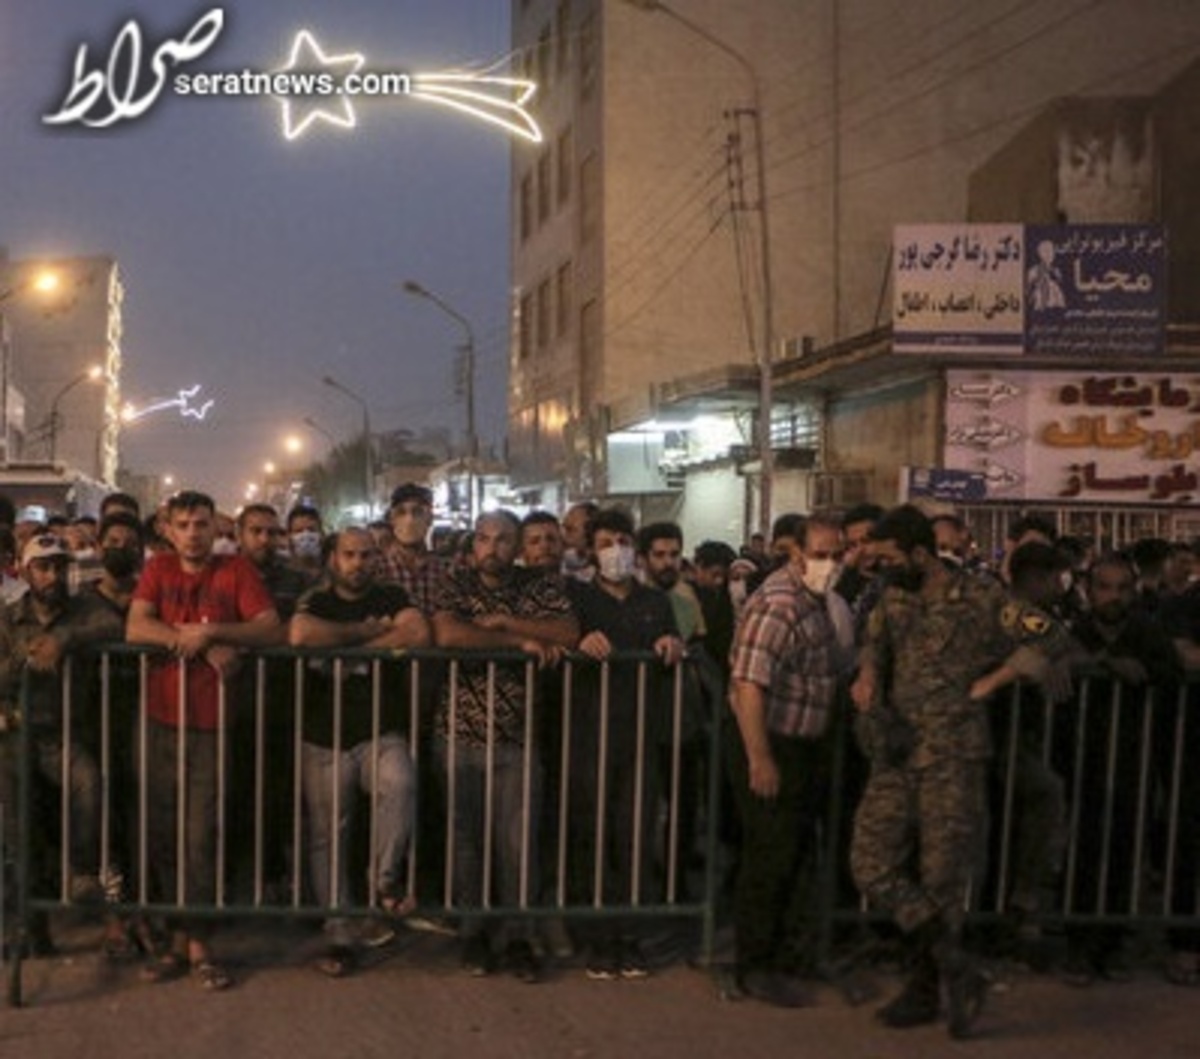 فردا پنجشنبه در خوزستان عزای عمومی اعلام شد